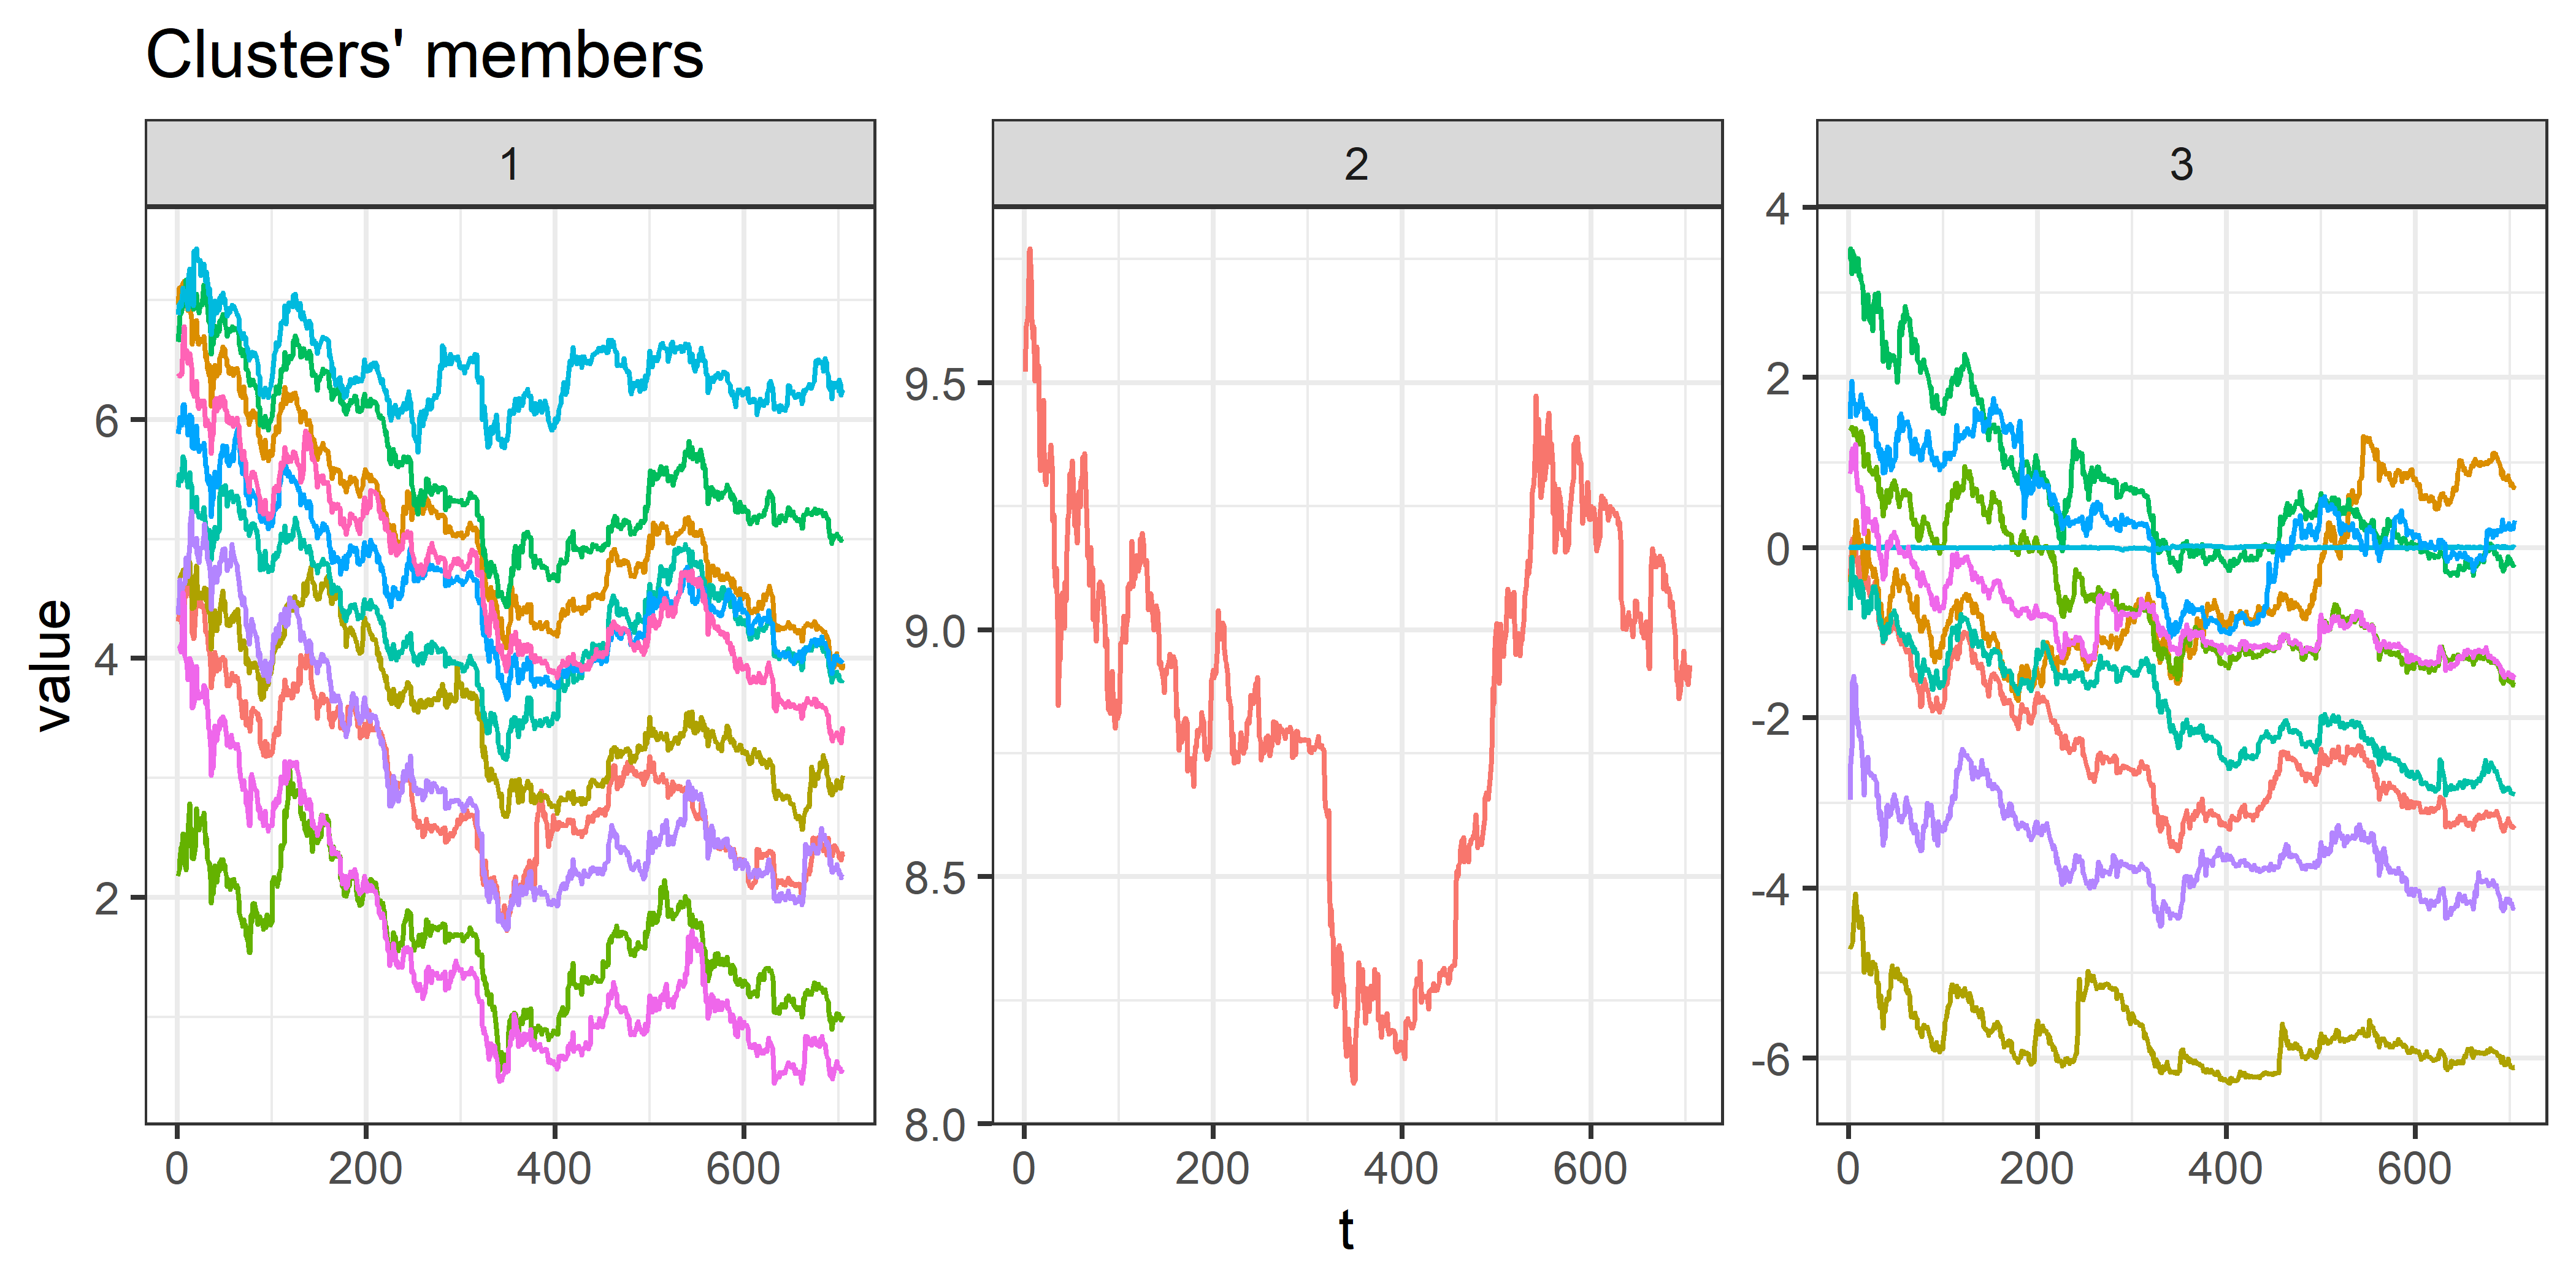 Результат оптимальной иерархической кластеризации временных рядов cryptos, найденной при помощи трех индексов валидности